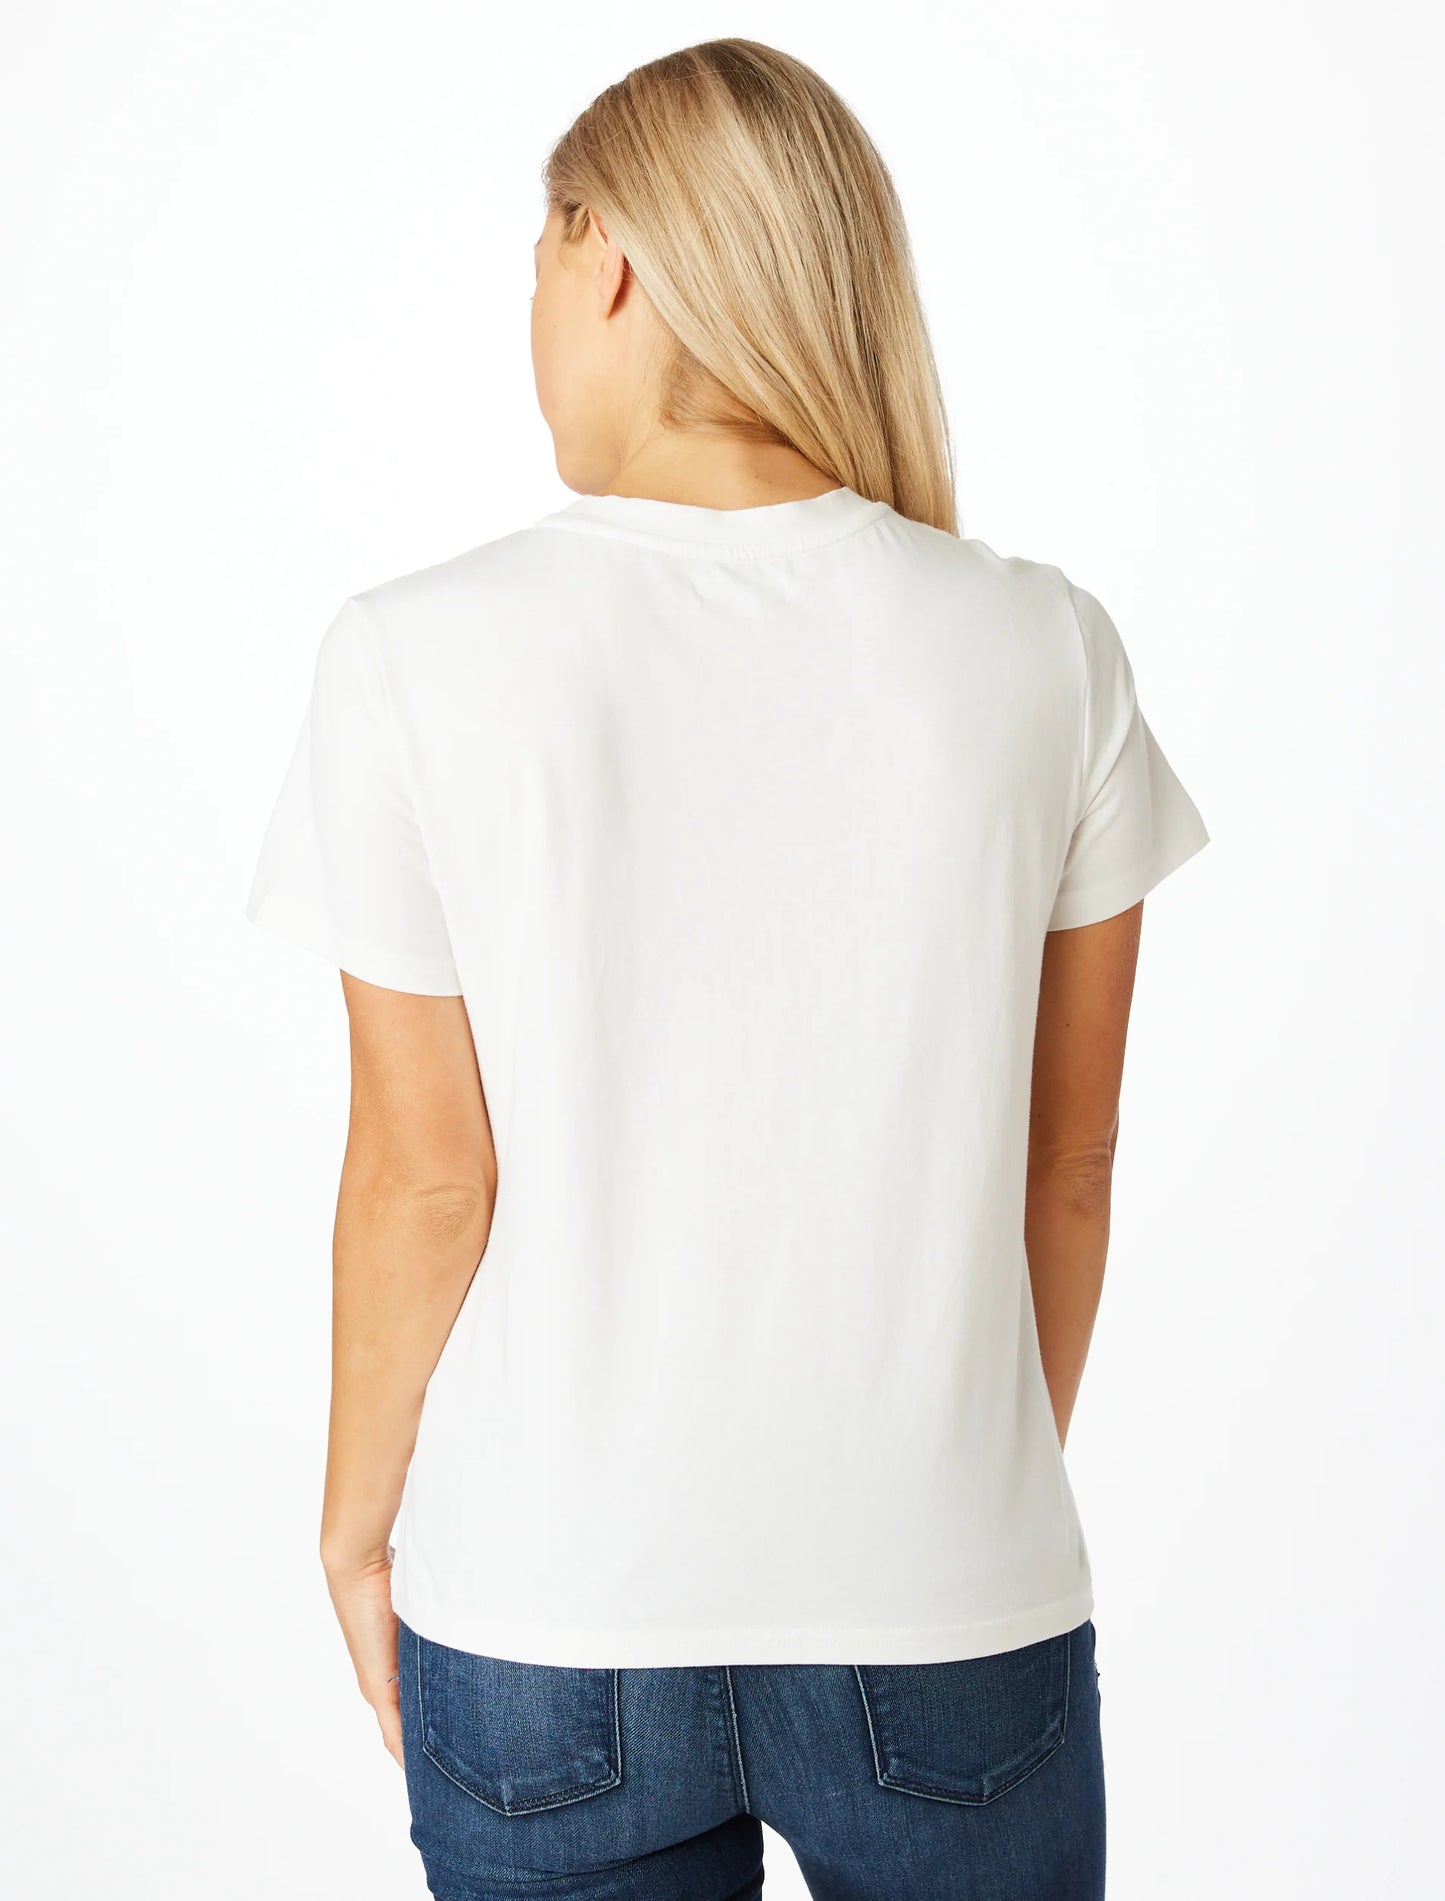 Turkey Sequin Shirt- White